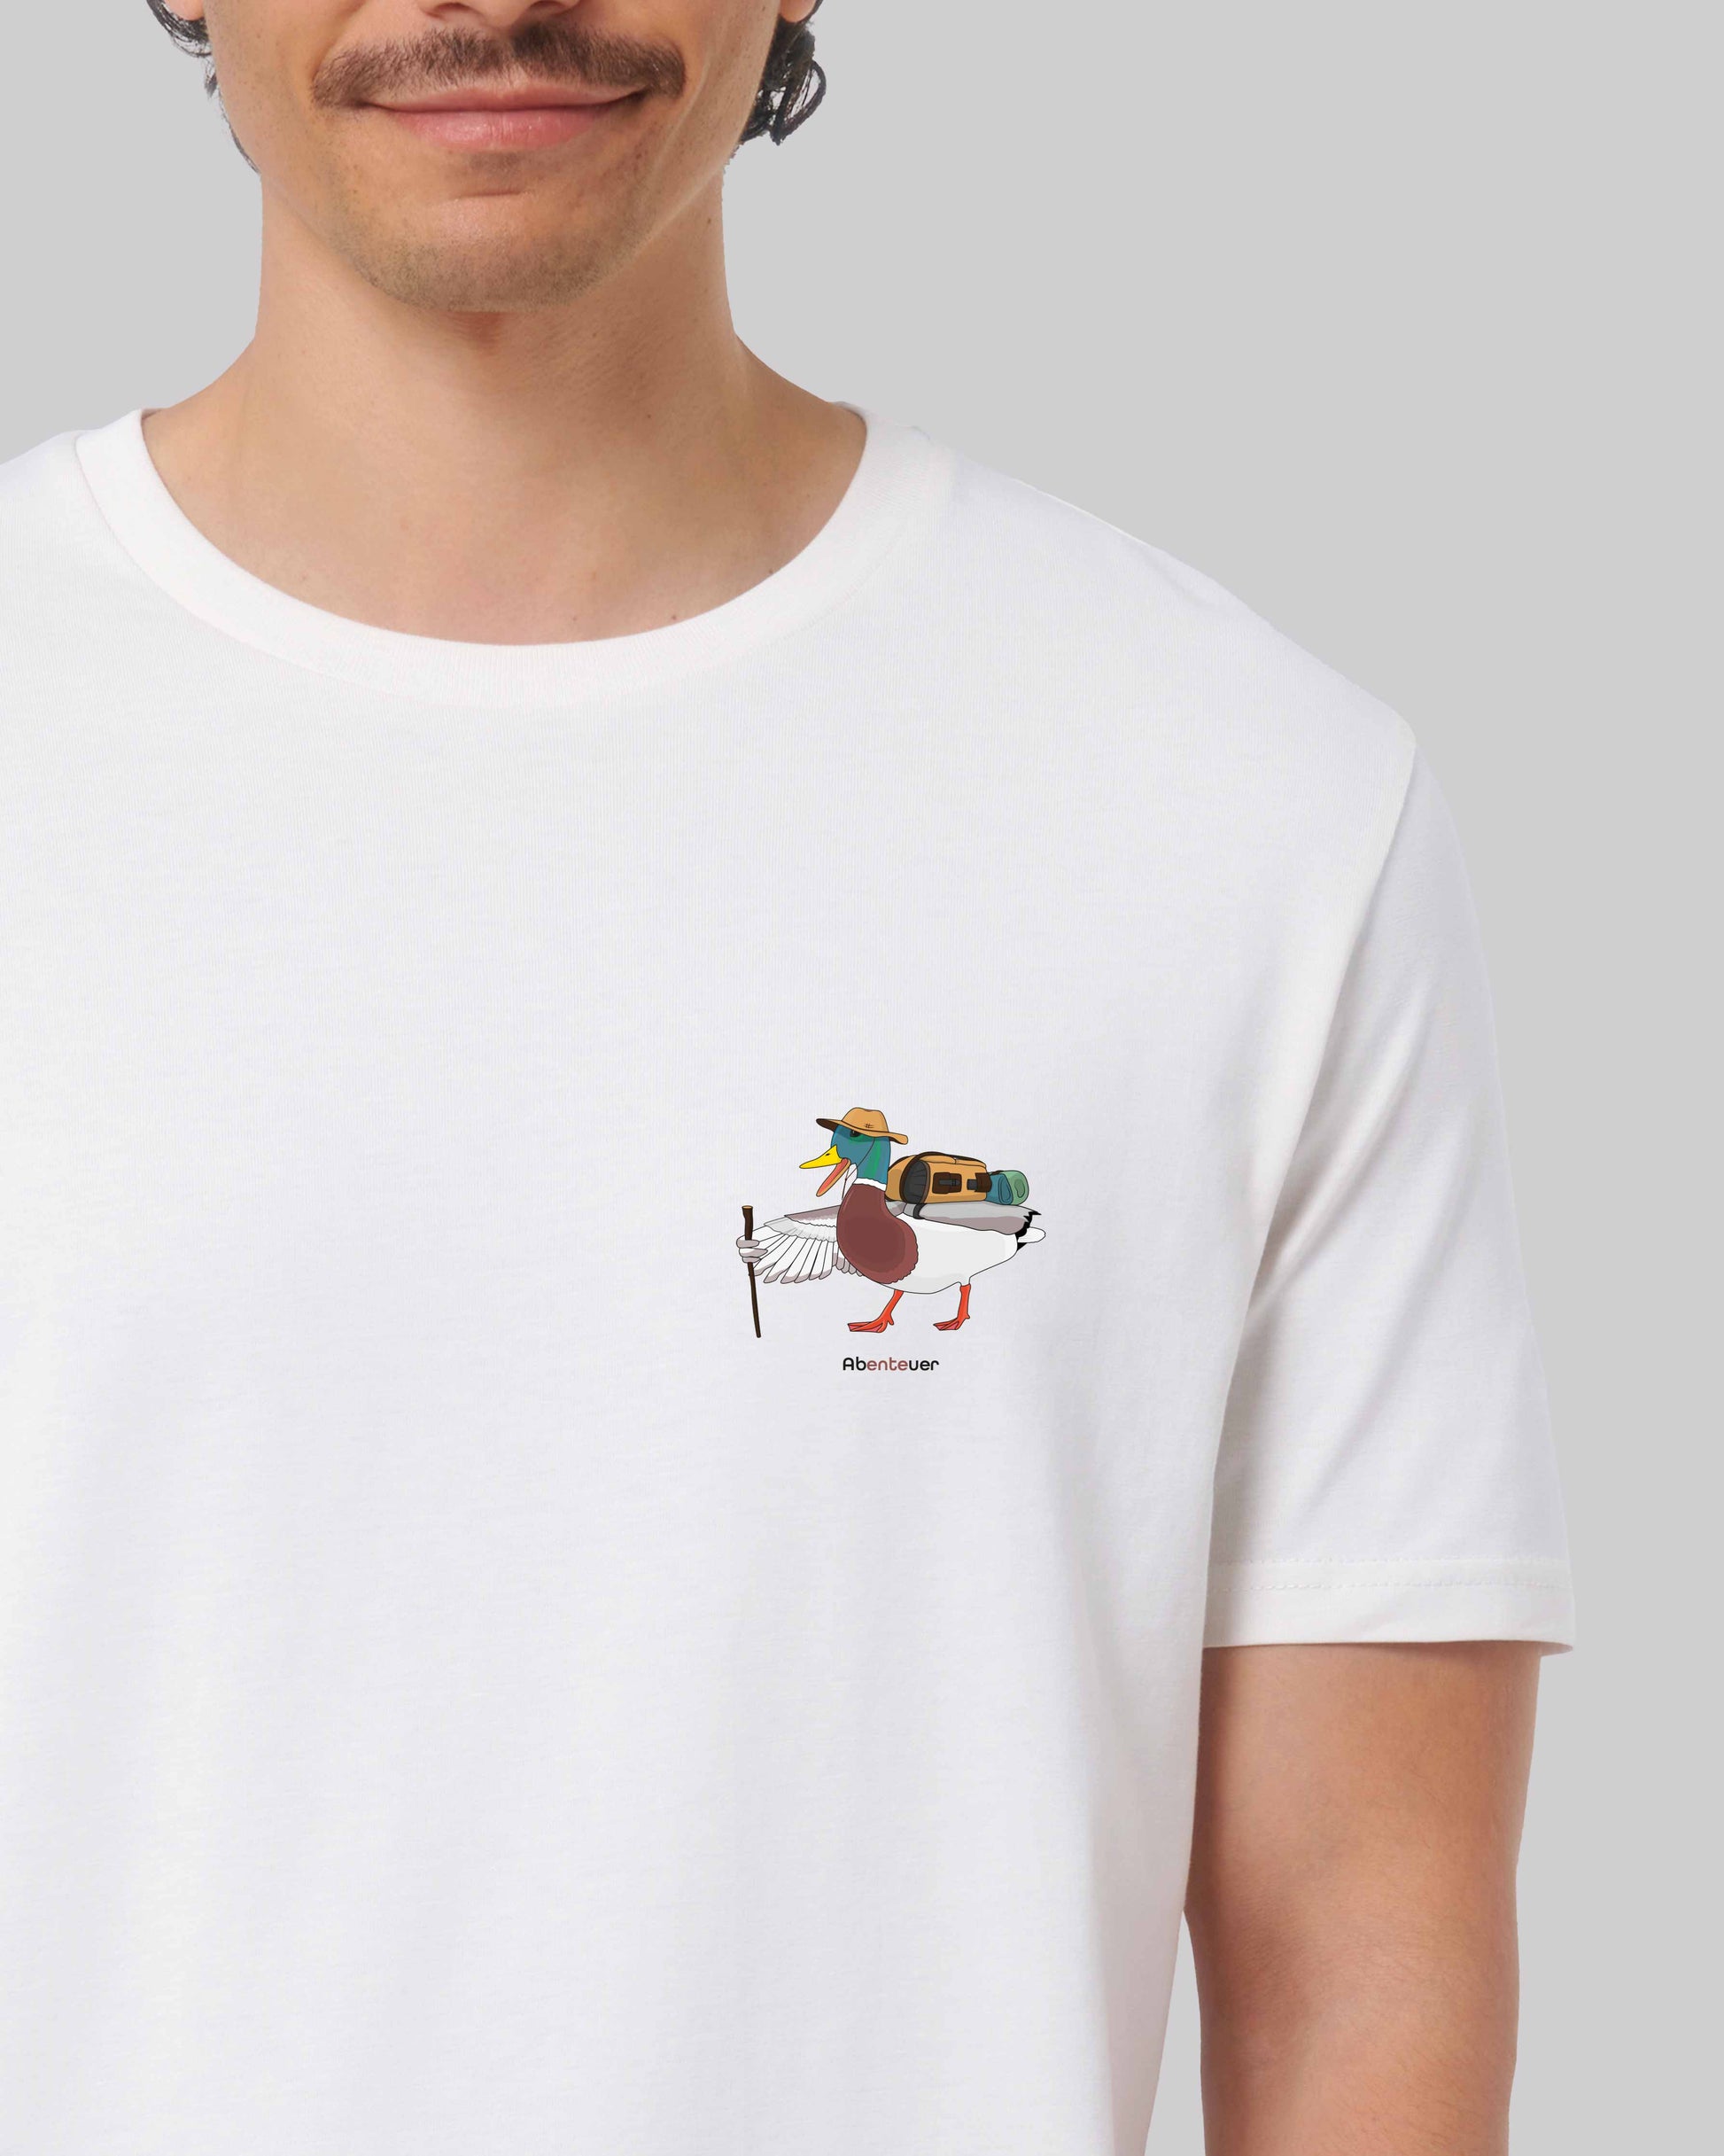 EINHORST® unisex Organic Shirt in Weiß mit dem Motiv "Abenteuer", Bild von männlicher Person mit Shirt